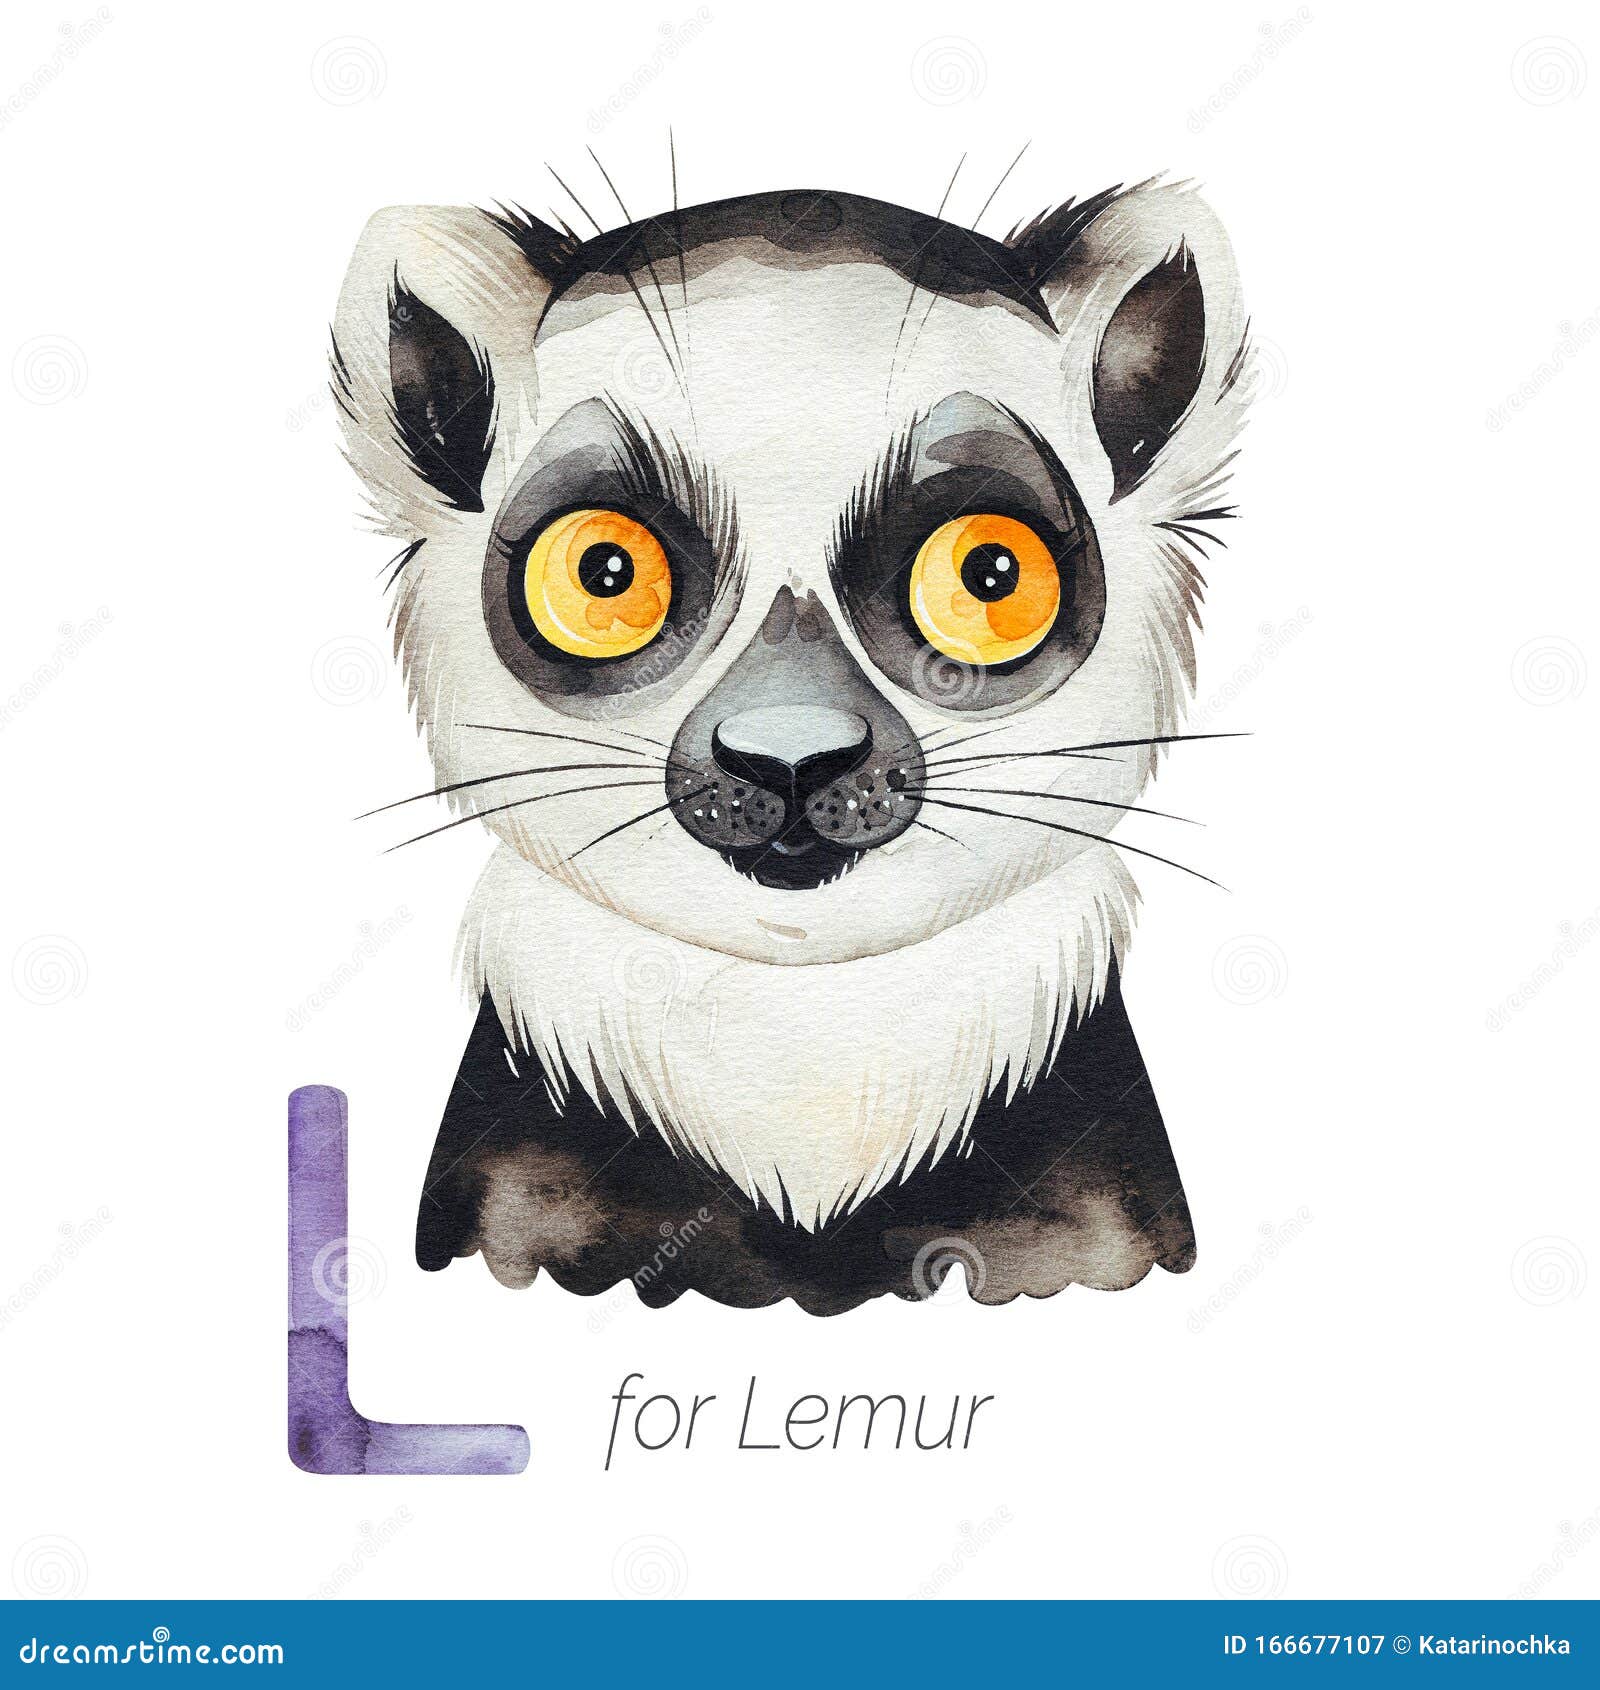 cute lemur for l letter.